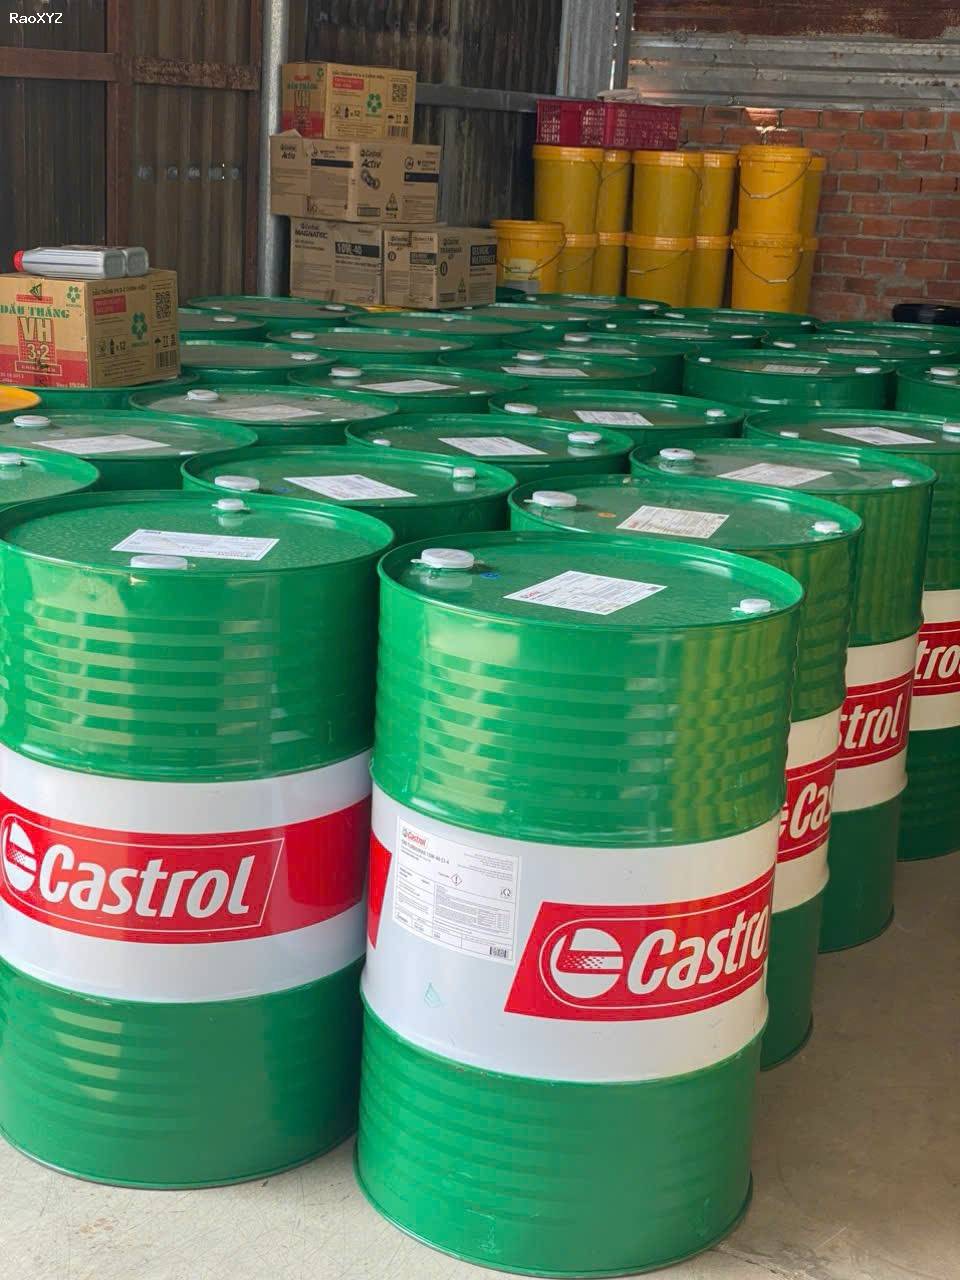 Đại lý phân phối dầu nhớt Castrol Bp tại TPHCM – Cam kết hàng chính hãng và giá tốt nhất – 0942.71.70.76